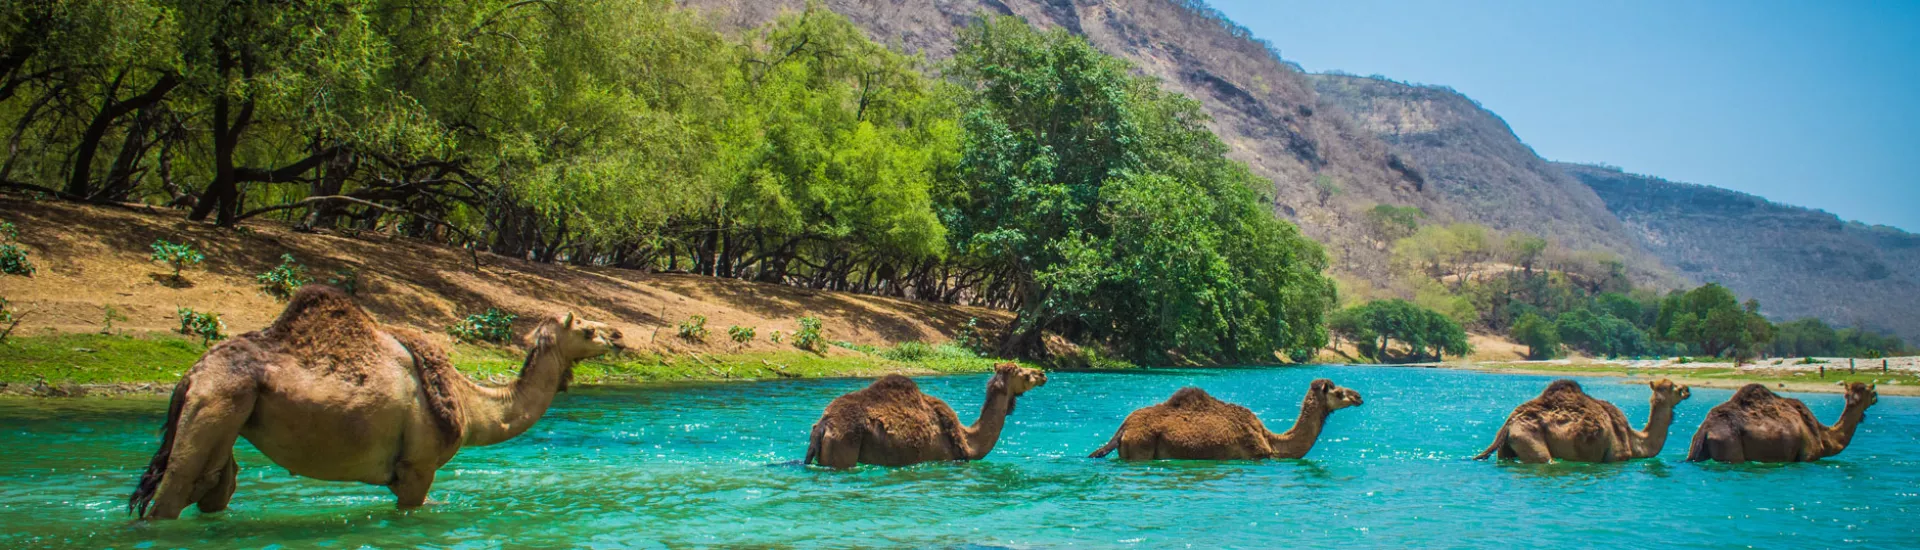 Kamele durchqueren einen Fluss in der Wüstenoase im Oman